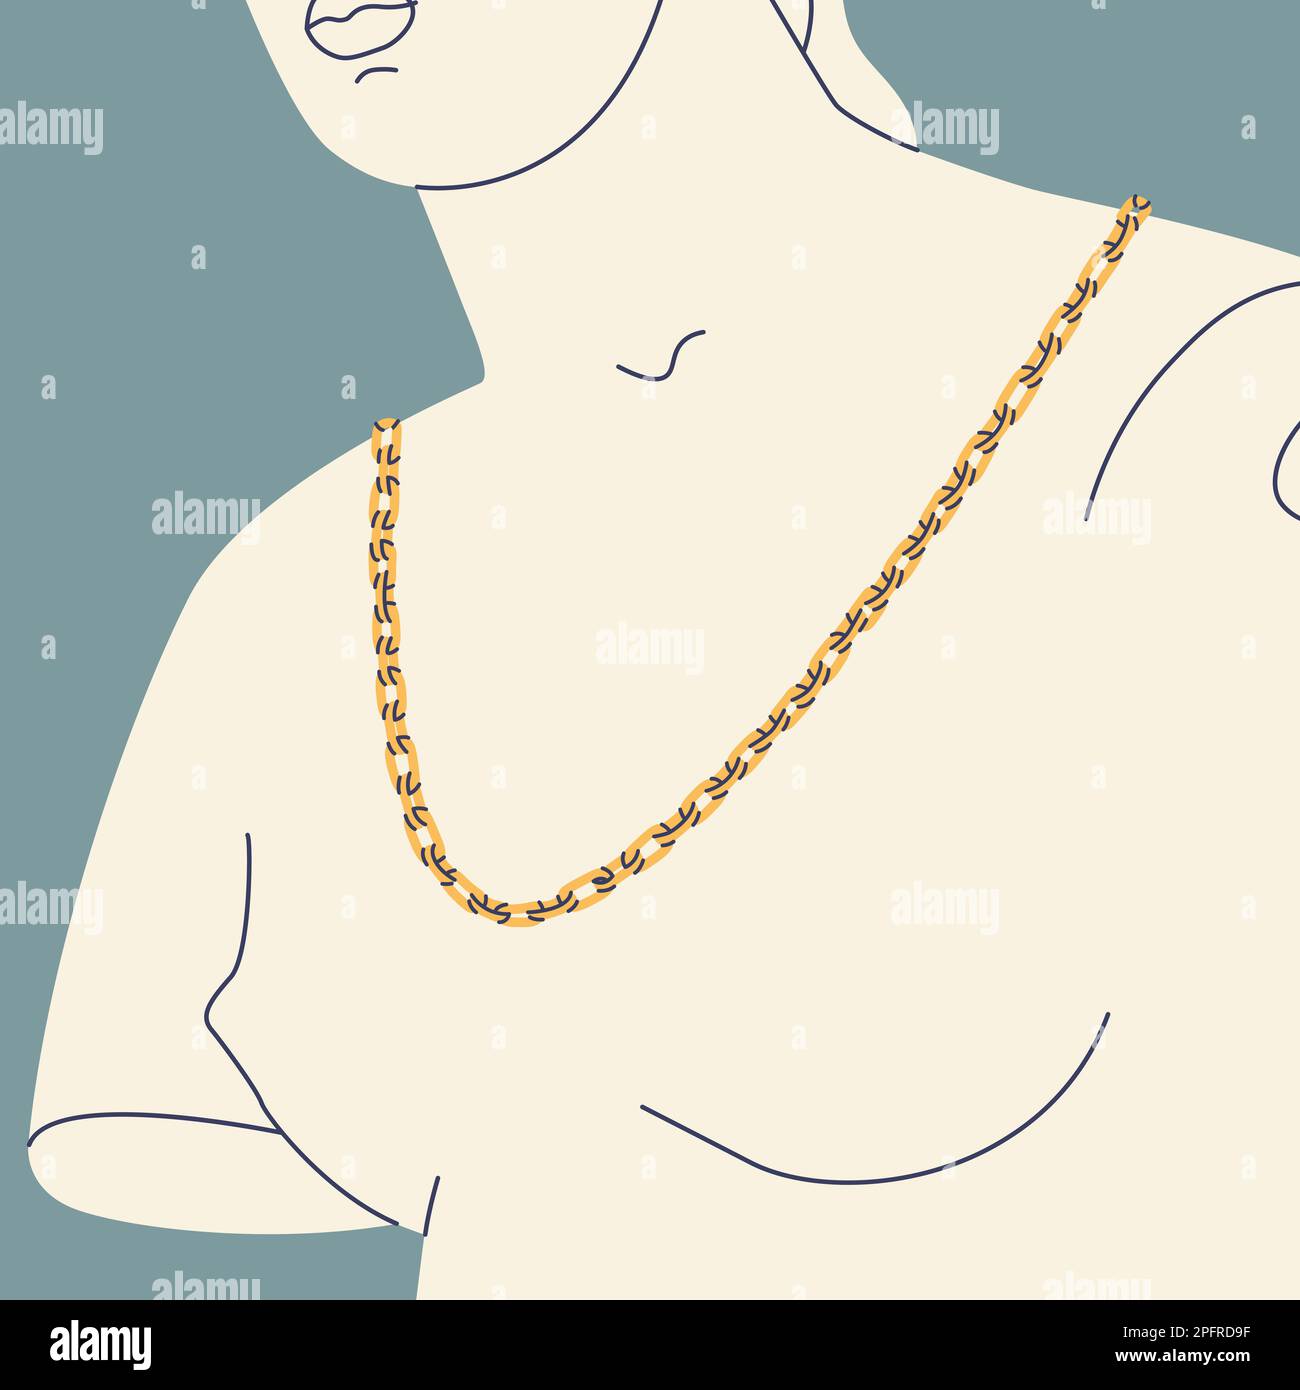 Fragment d'une ancienne statue grecque d'une femme avec une chaîne dorée autour de son cou. Sculpture ancienne avec éléments modernes. Illustration tendance Vector Illustration de Vecteur